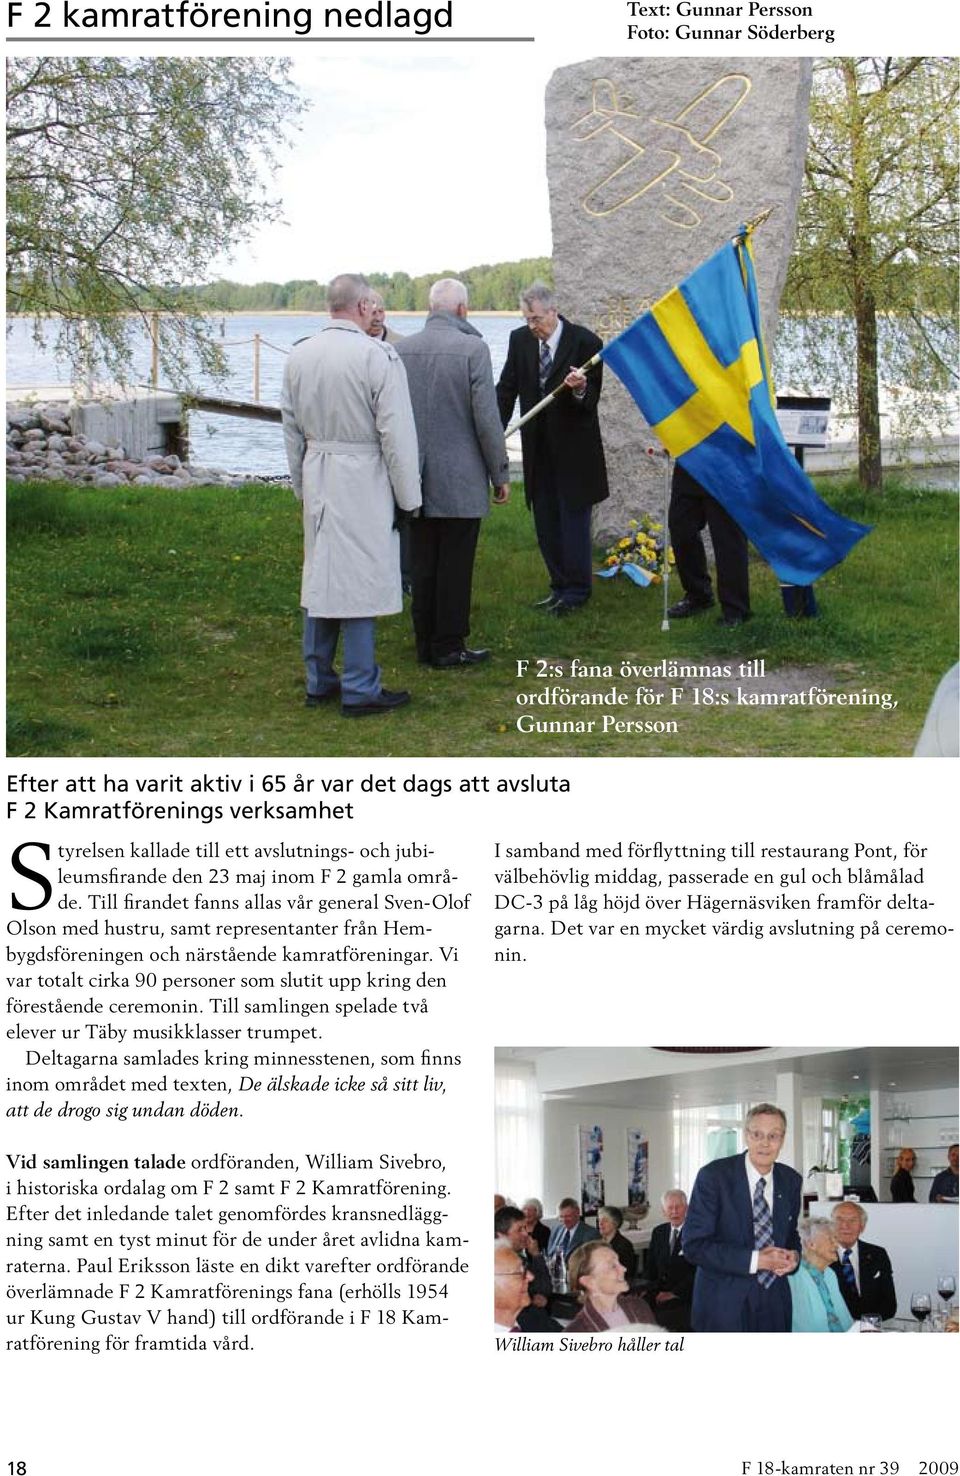 Till firandet fanns allas vår general Sven-Olof Olson med hustru, samt representanter från Hembygdsföreningen och närstående kamratföreningar.